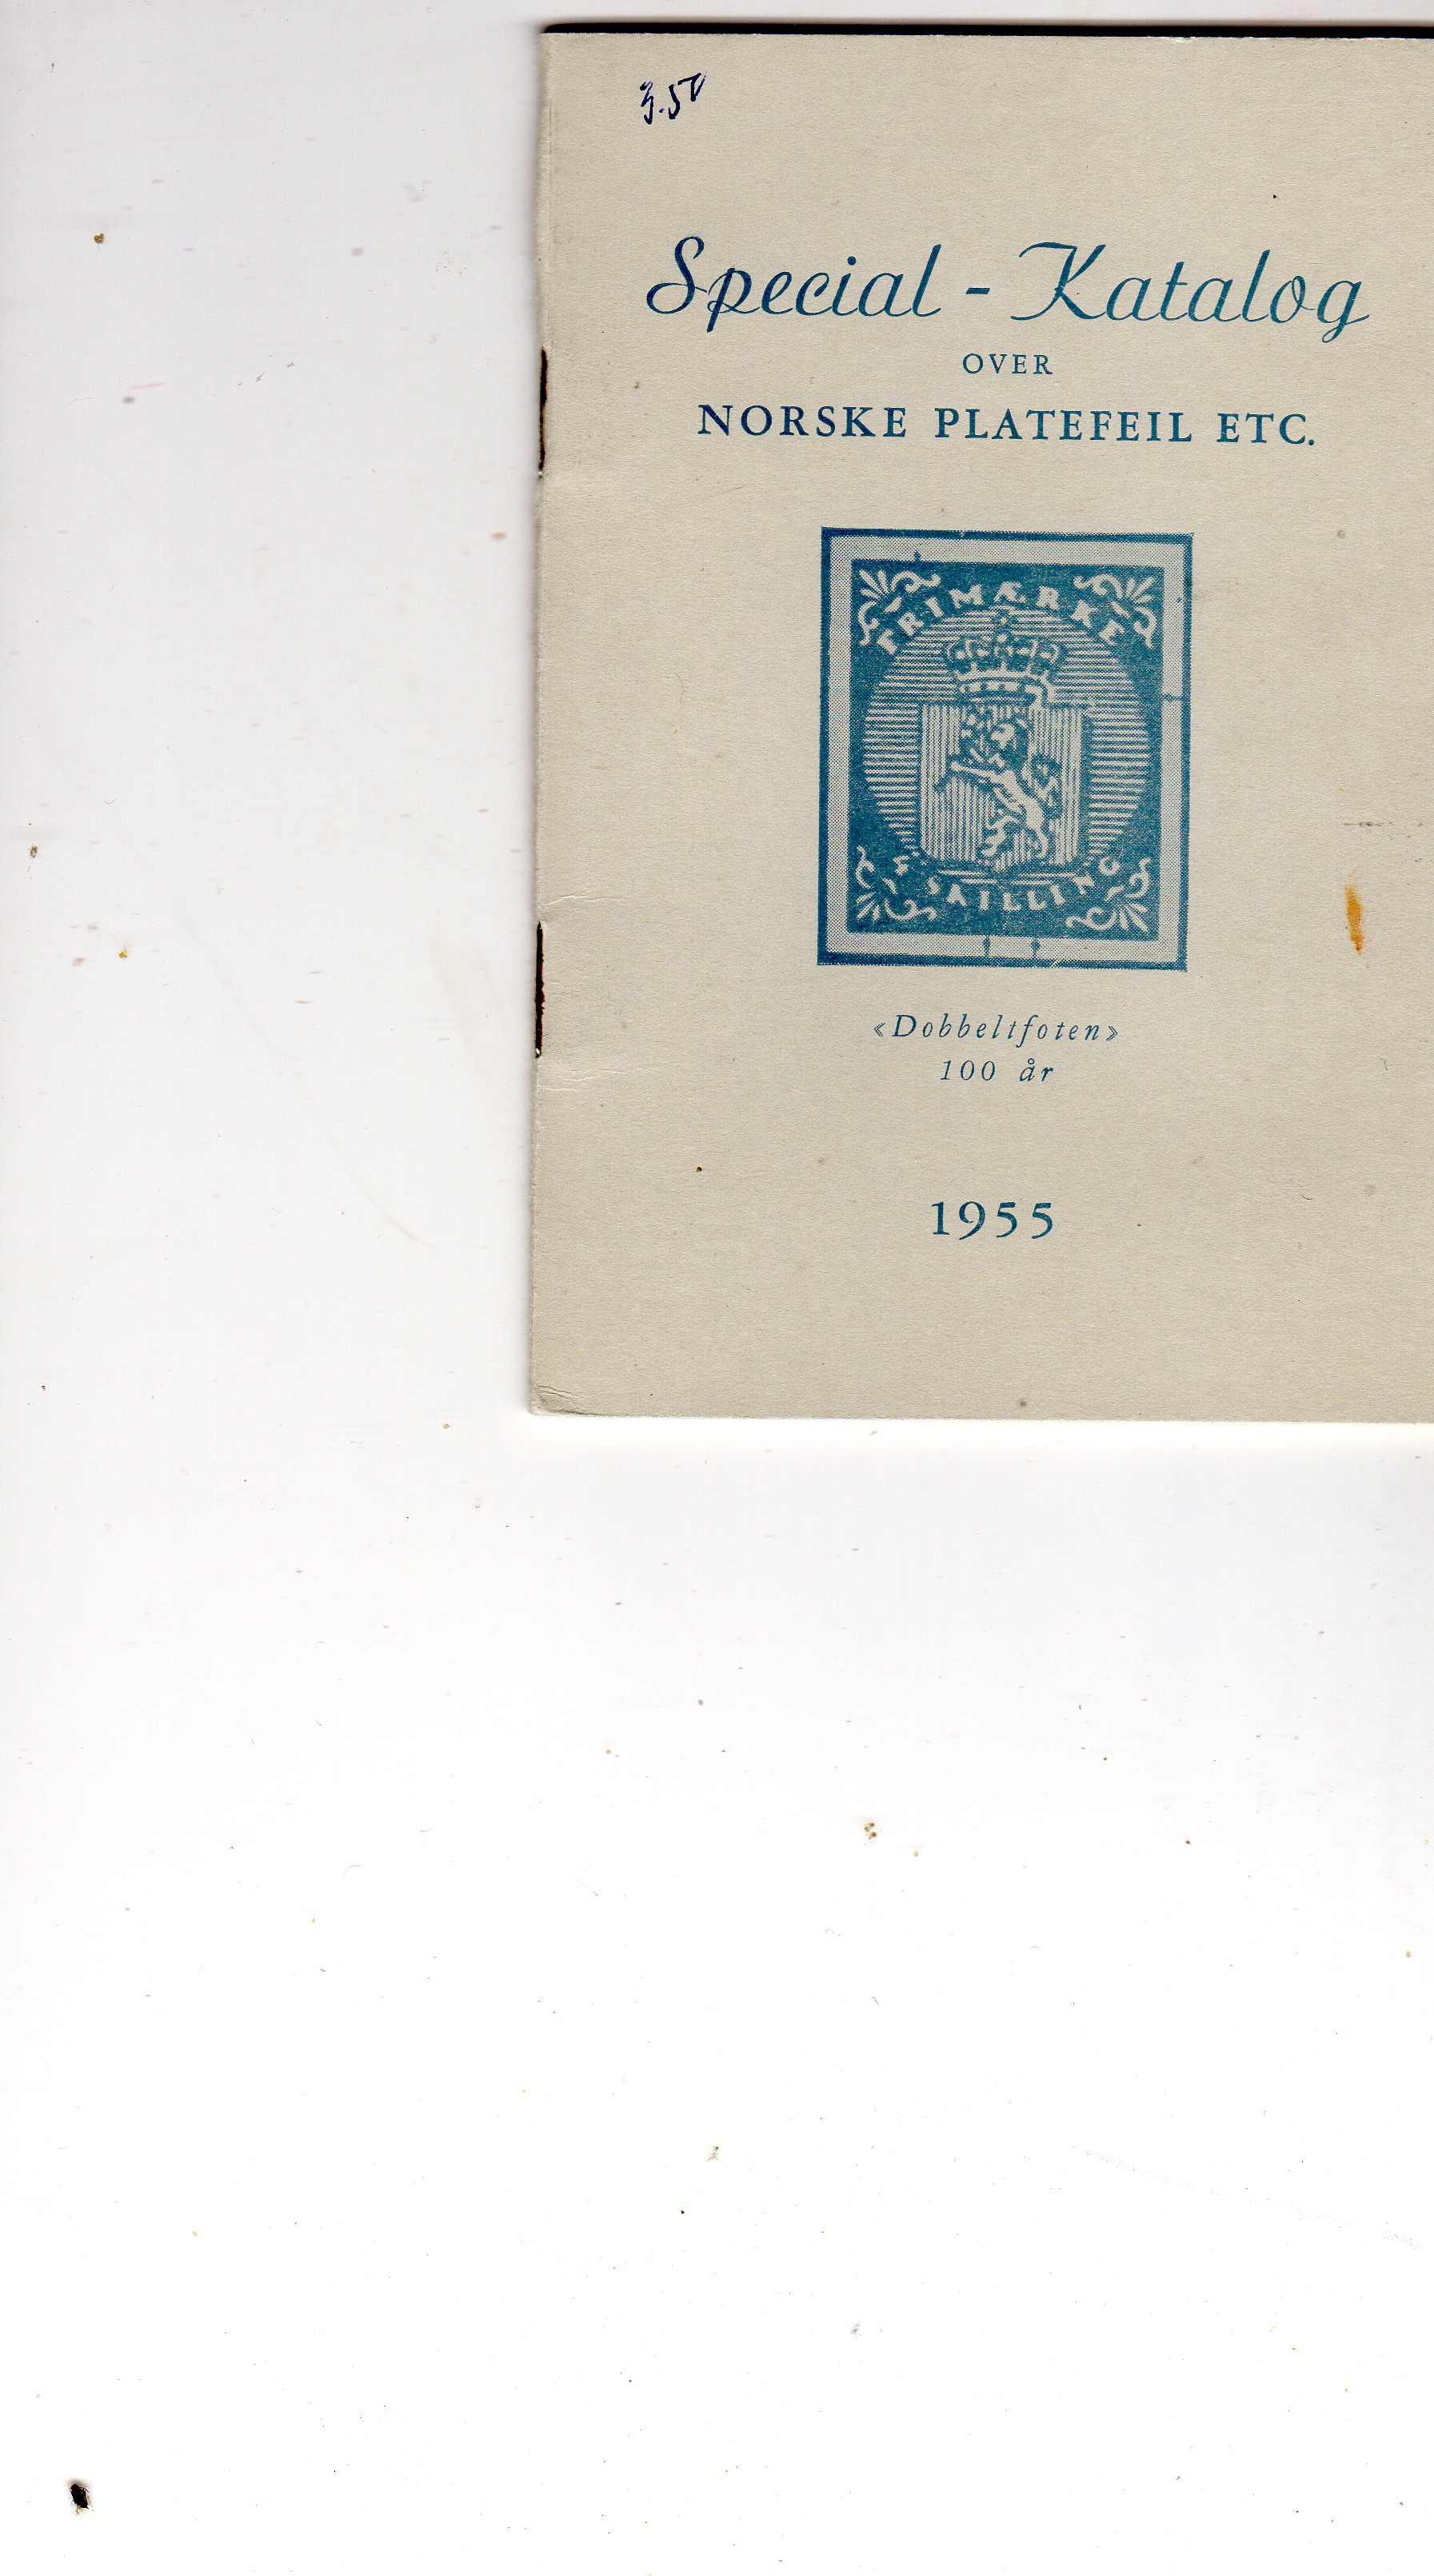 Special-katalog over norske platefeil etc 1955